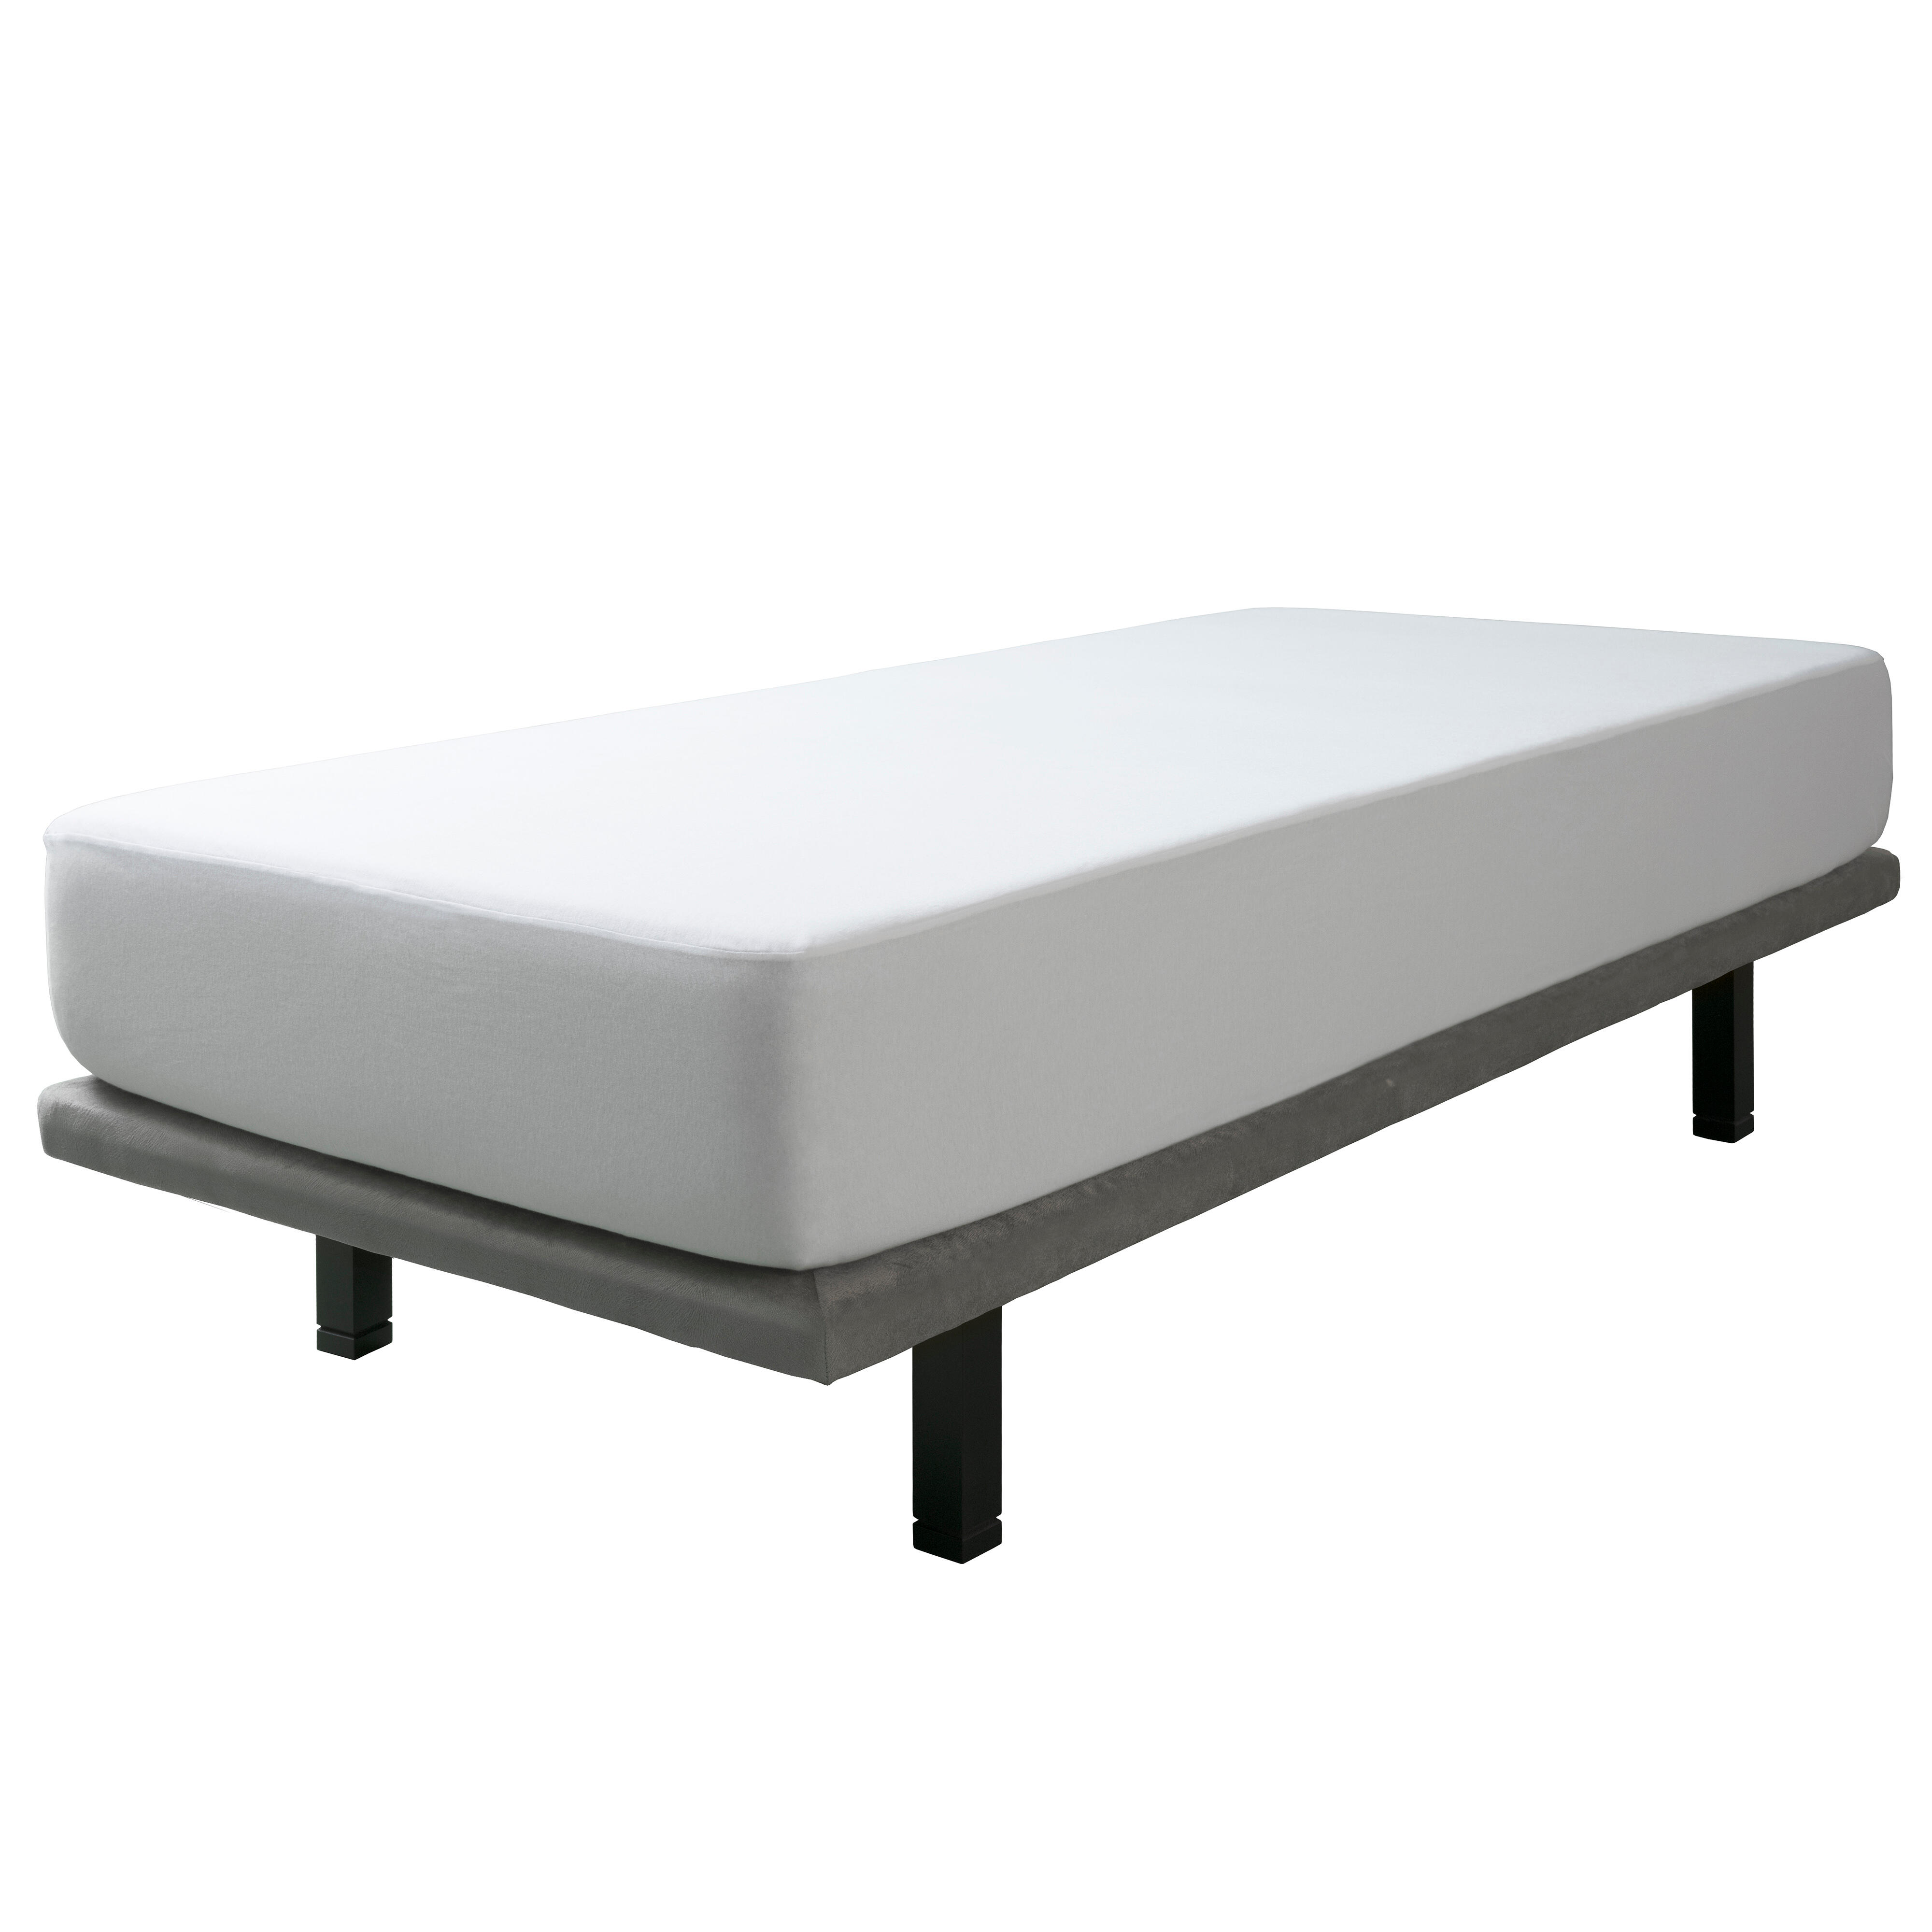 Protector de colchón liso tela algodón blanco para cama de 135 cm